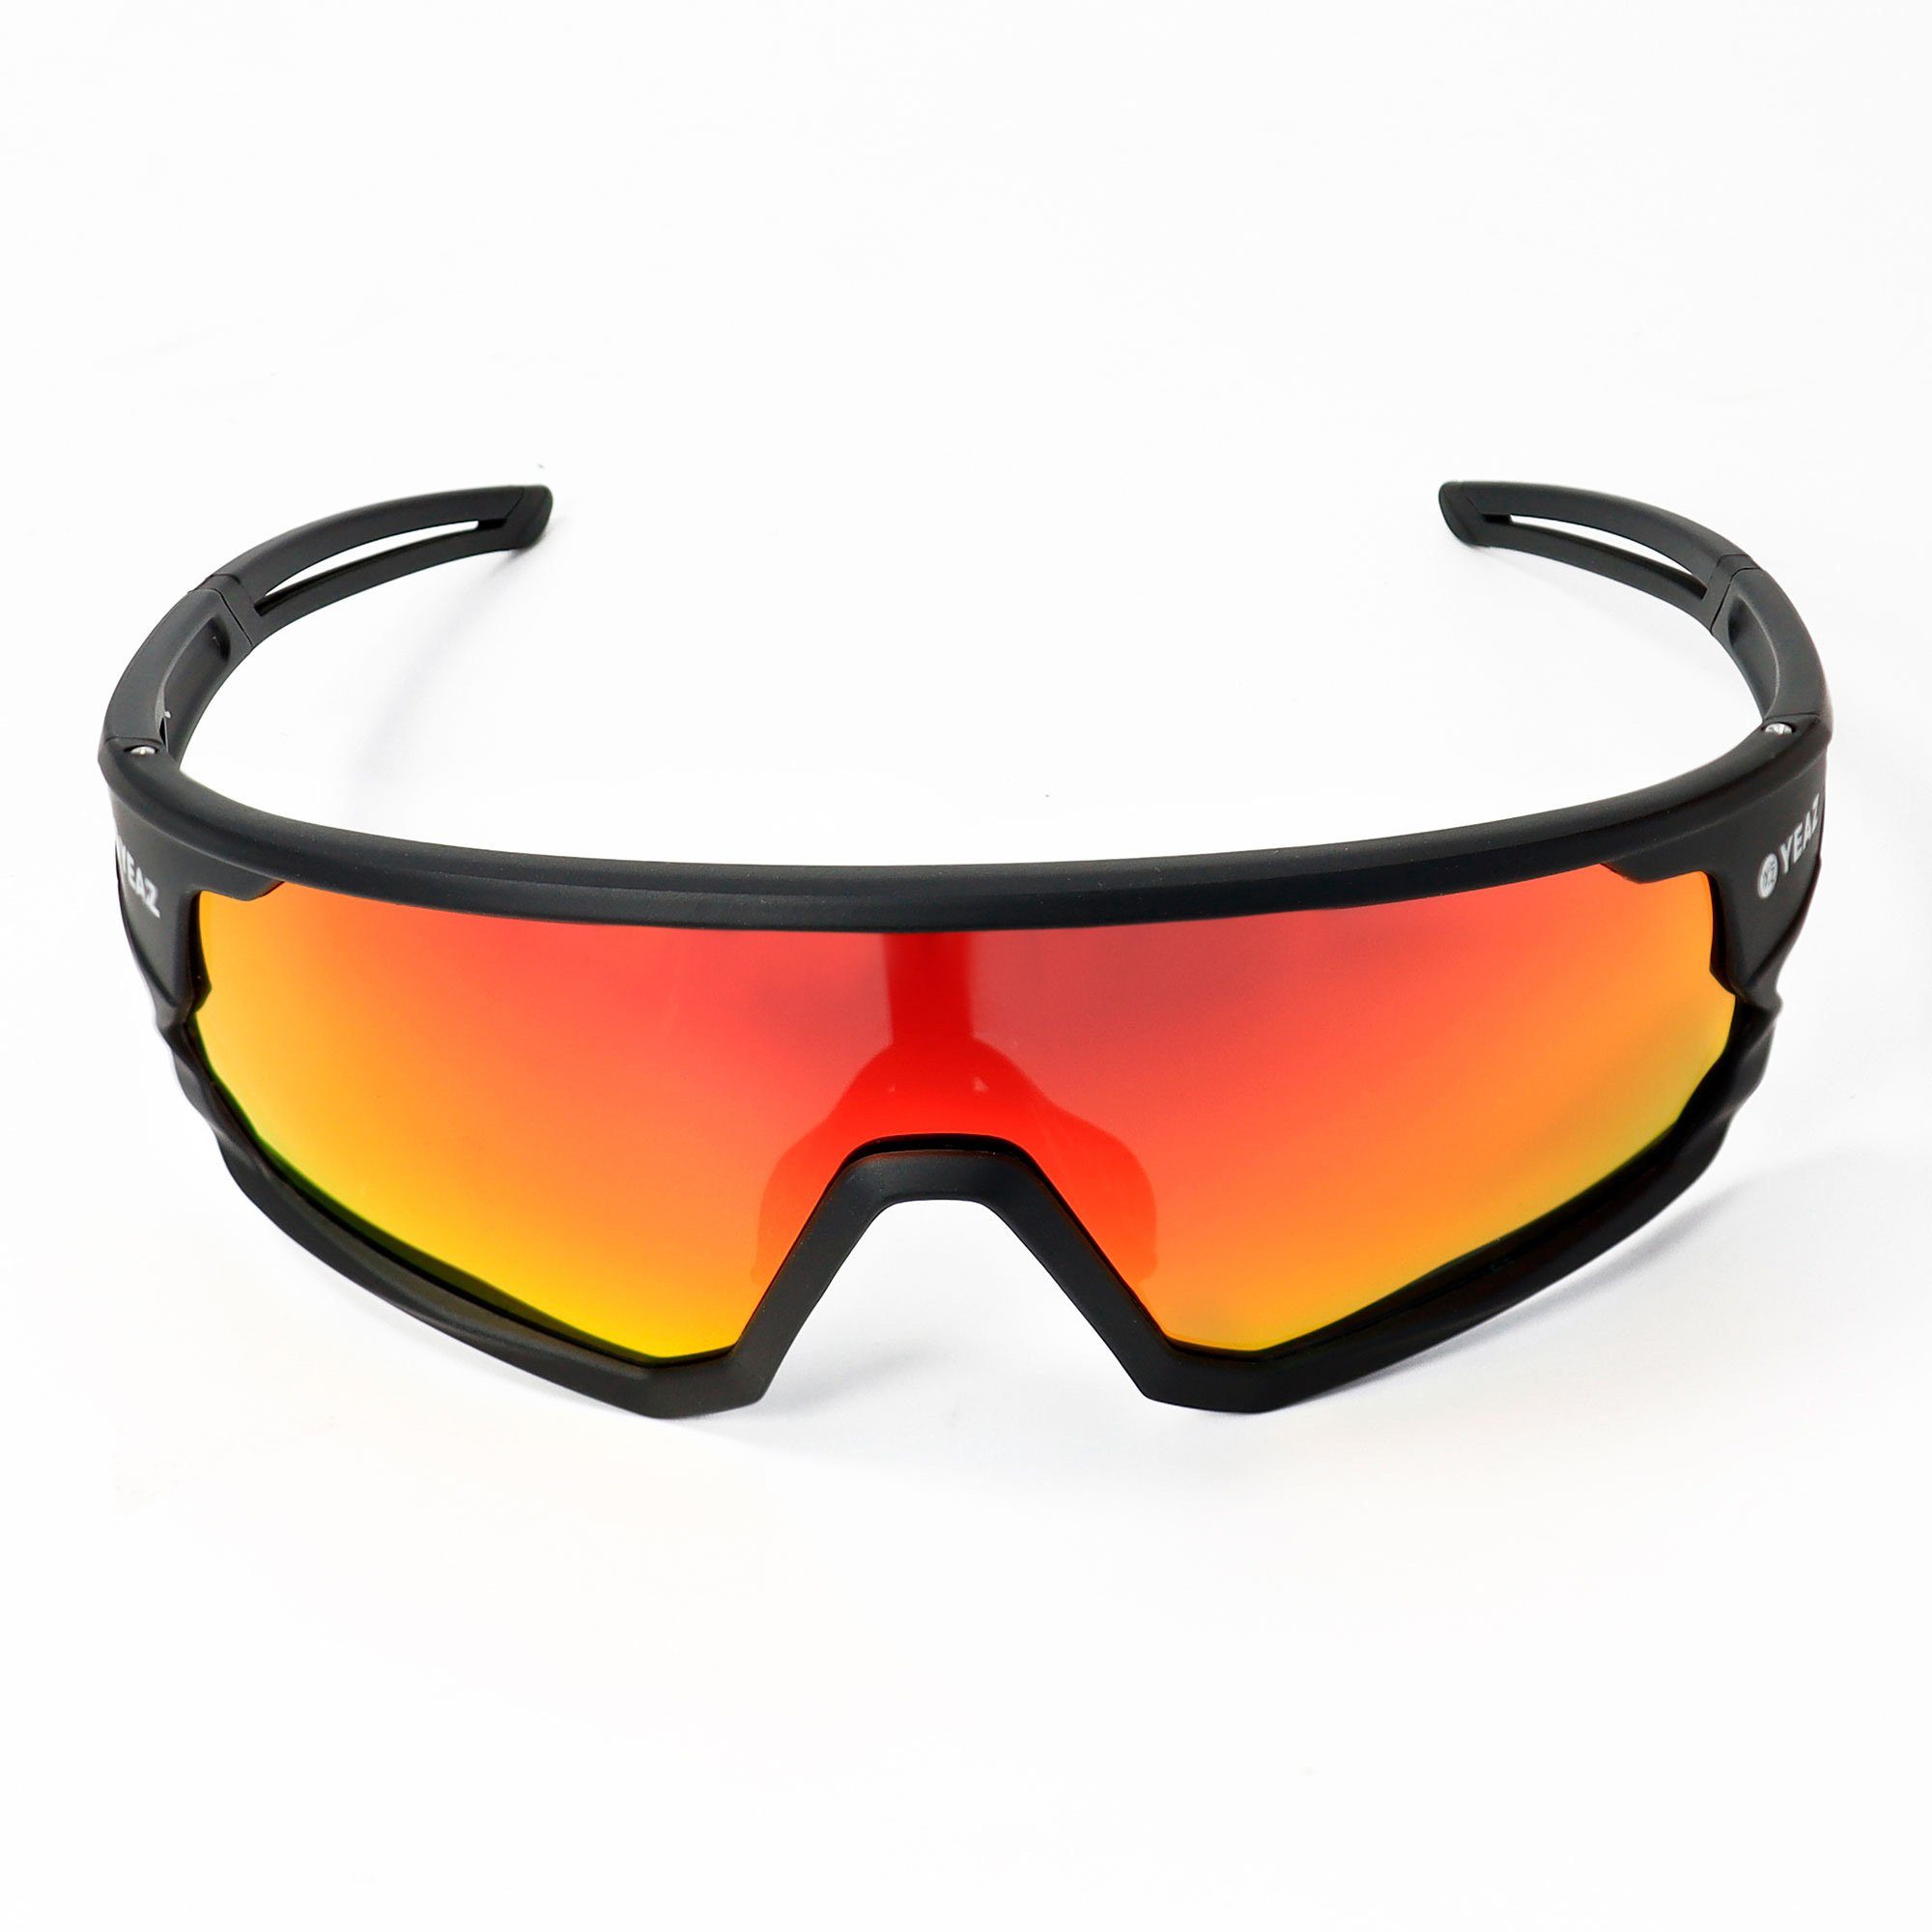 optimierter YEAZ bei SUNRISE Sicht sport-sonnenbrille Schutz black/red, Guter Sportbrille